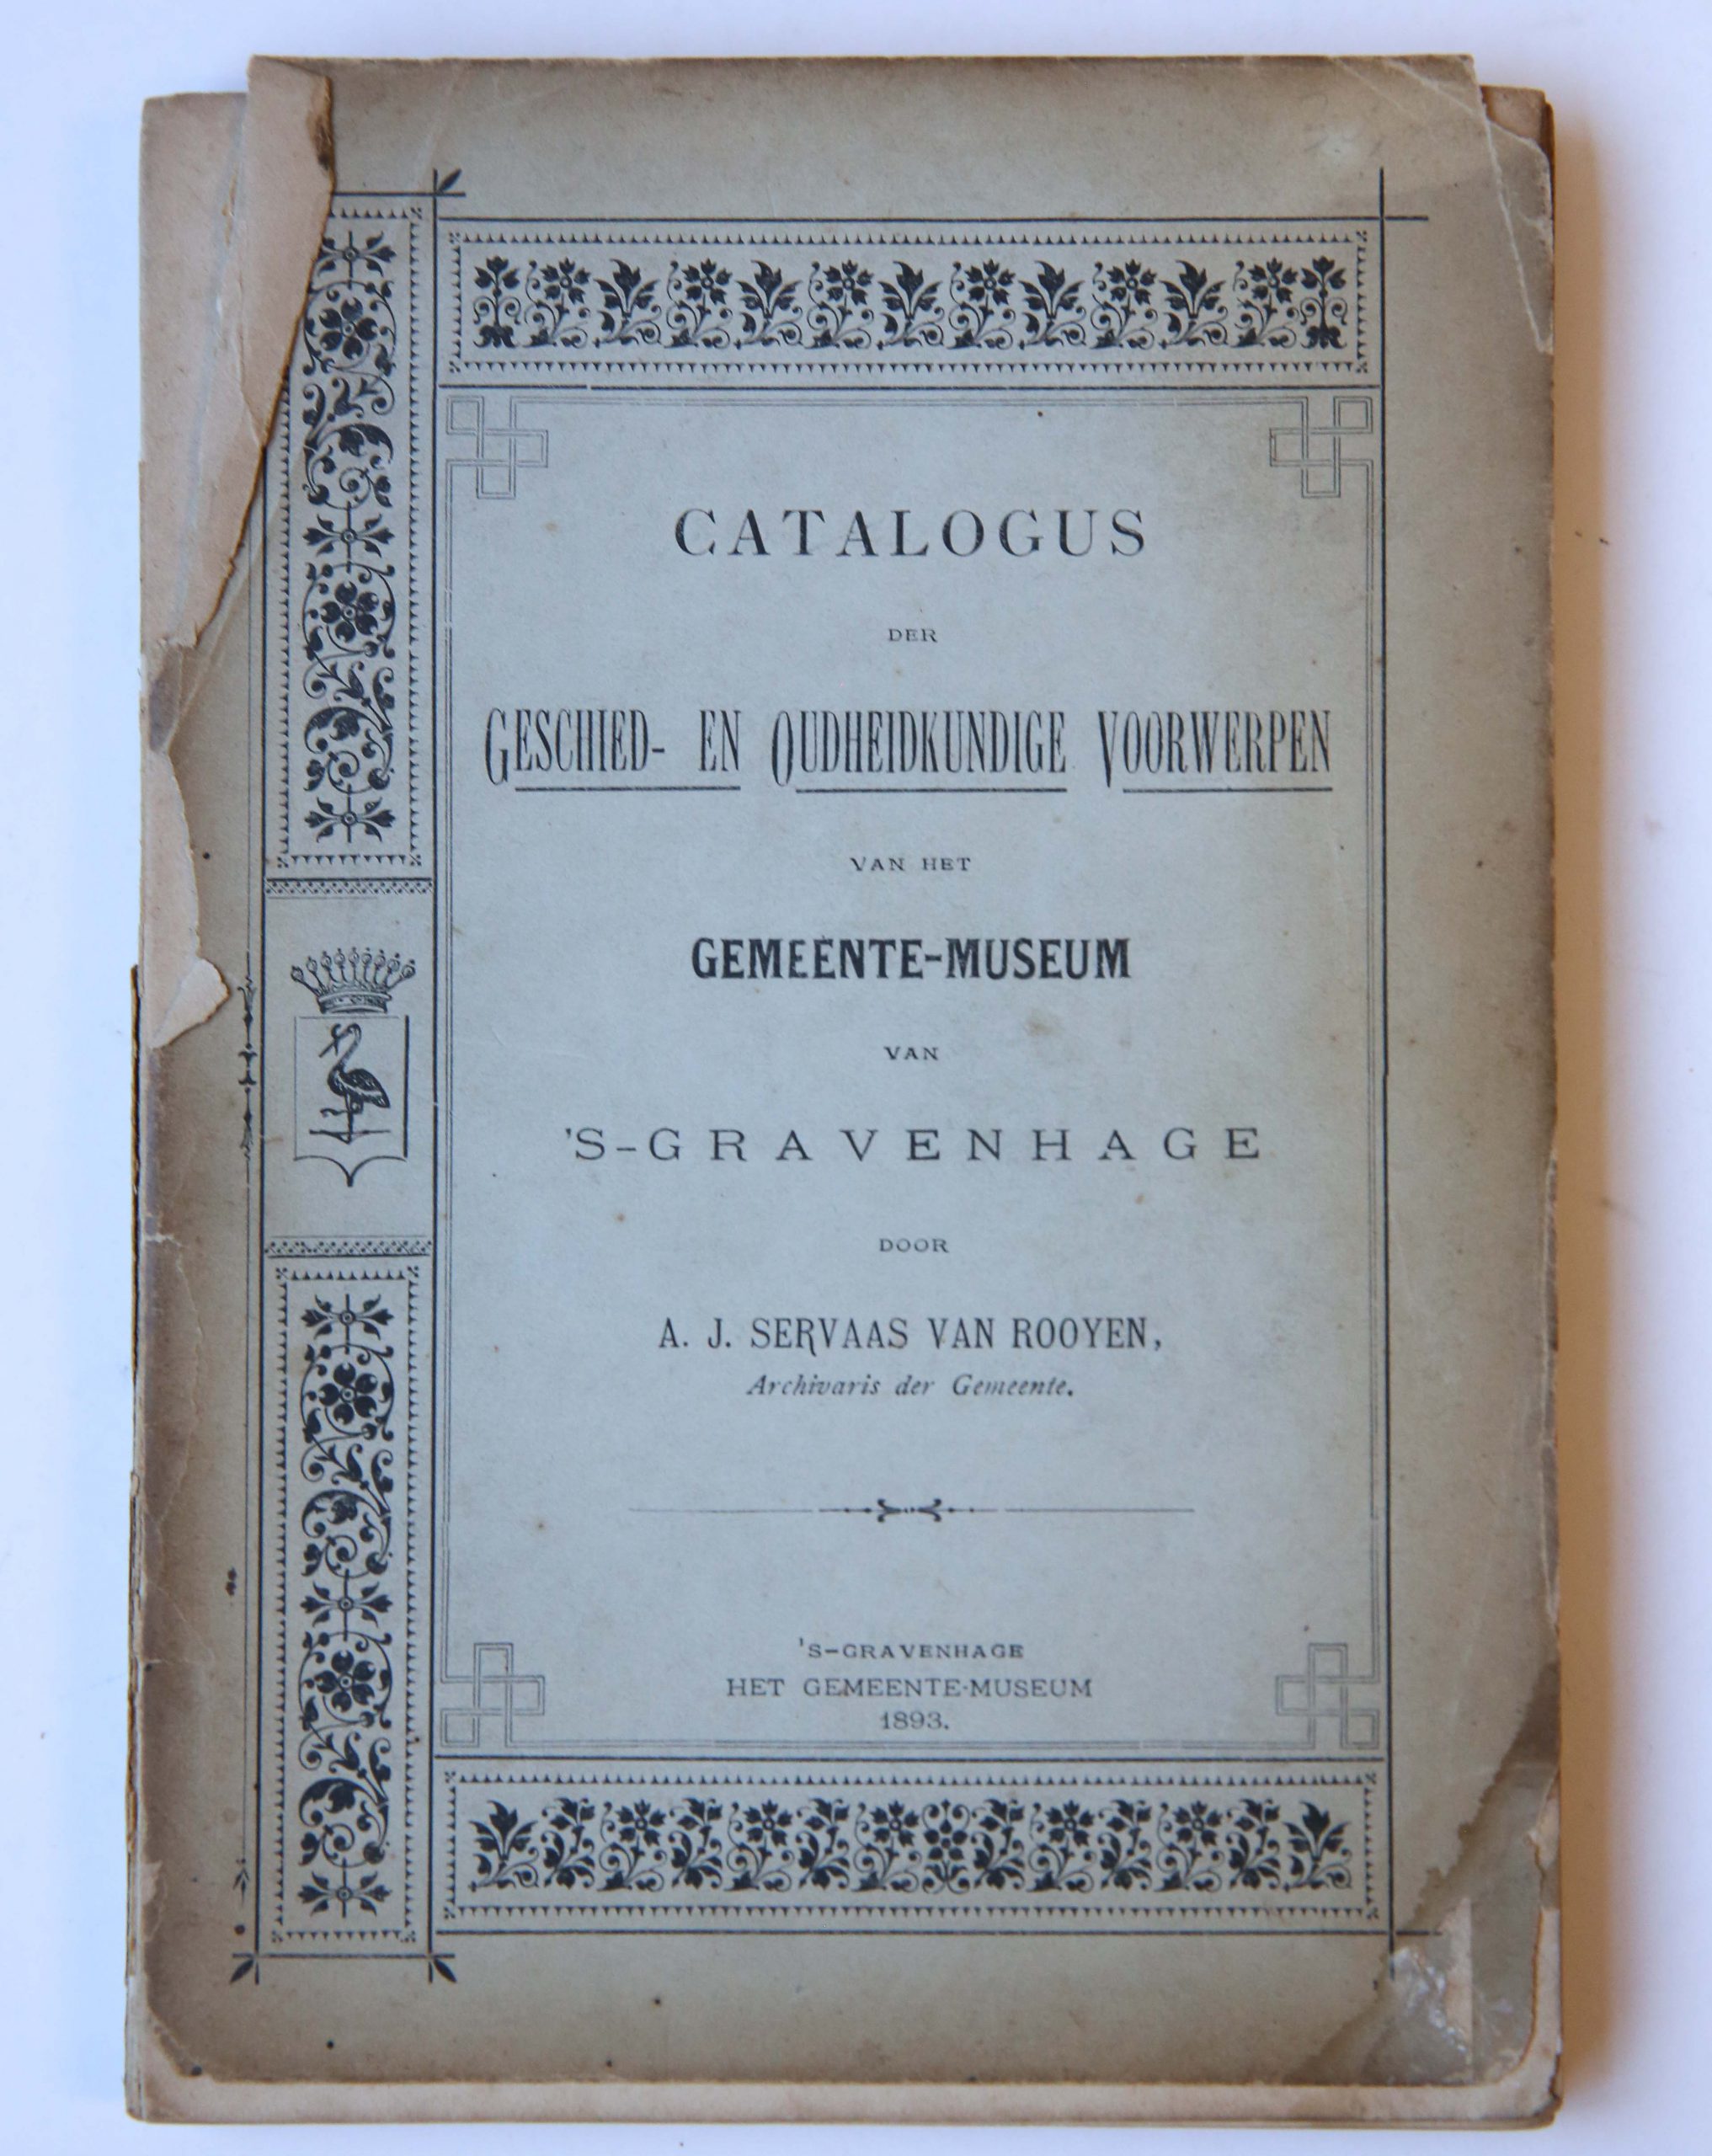 Catalogus der geschied- en oudheidkundige voorwerpen van het Gemeente-museum van 's-Gravenhage, 's-Gravenhage 1893, 162 pp. Illustrated.